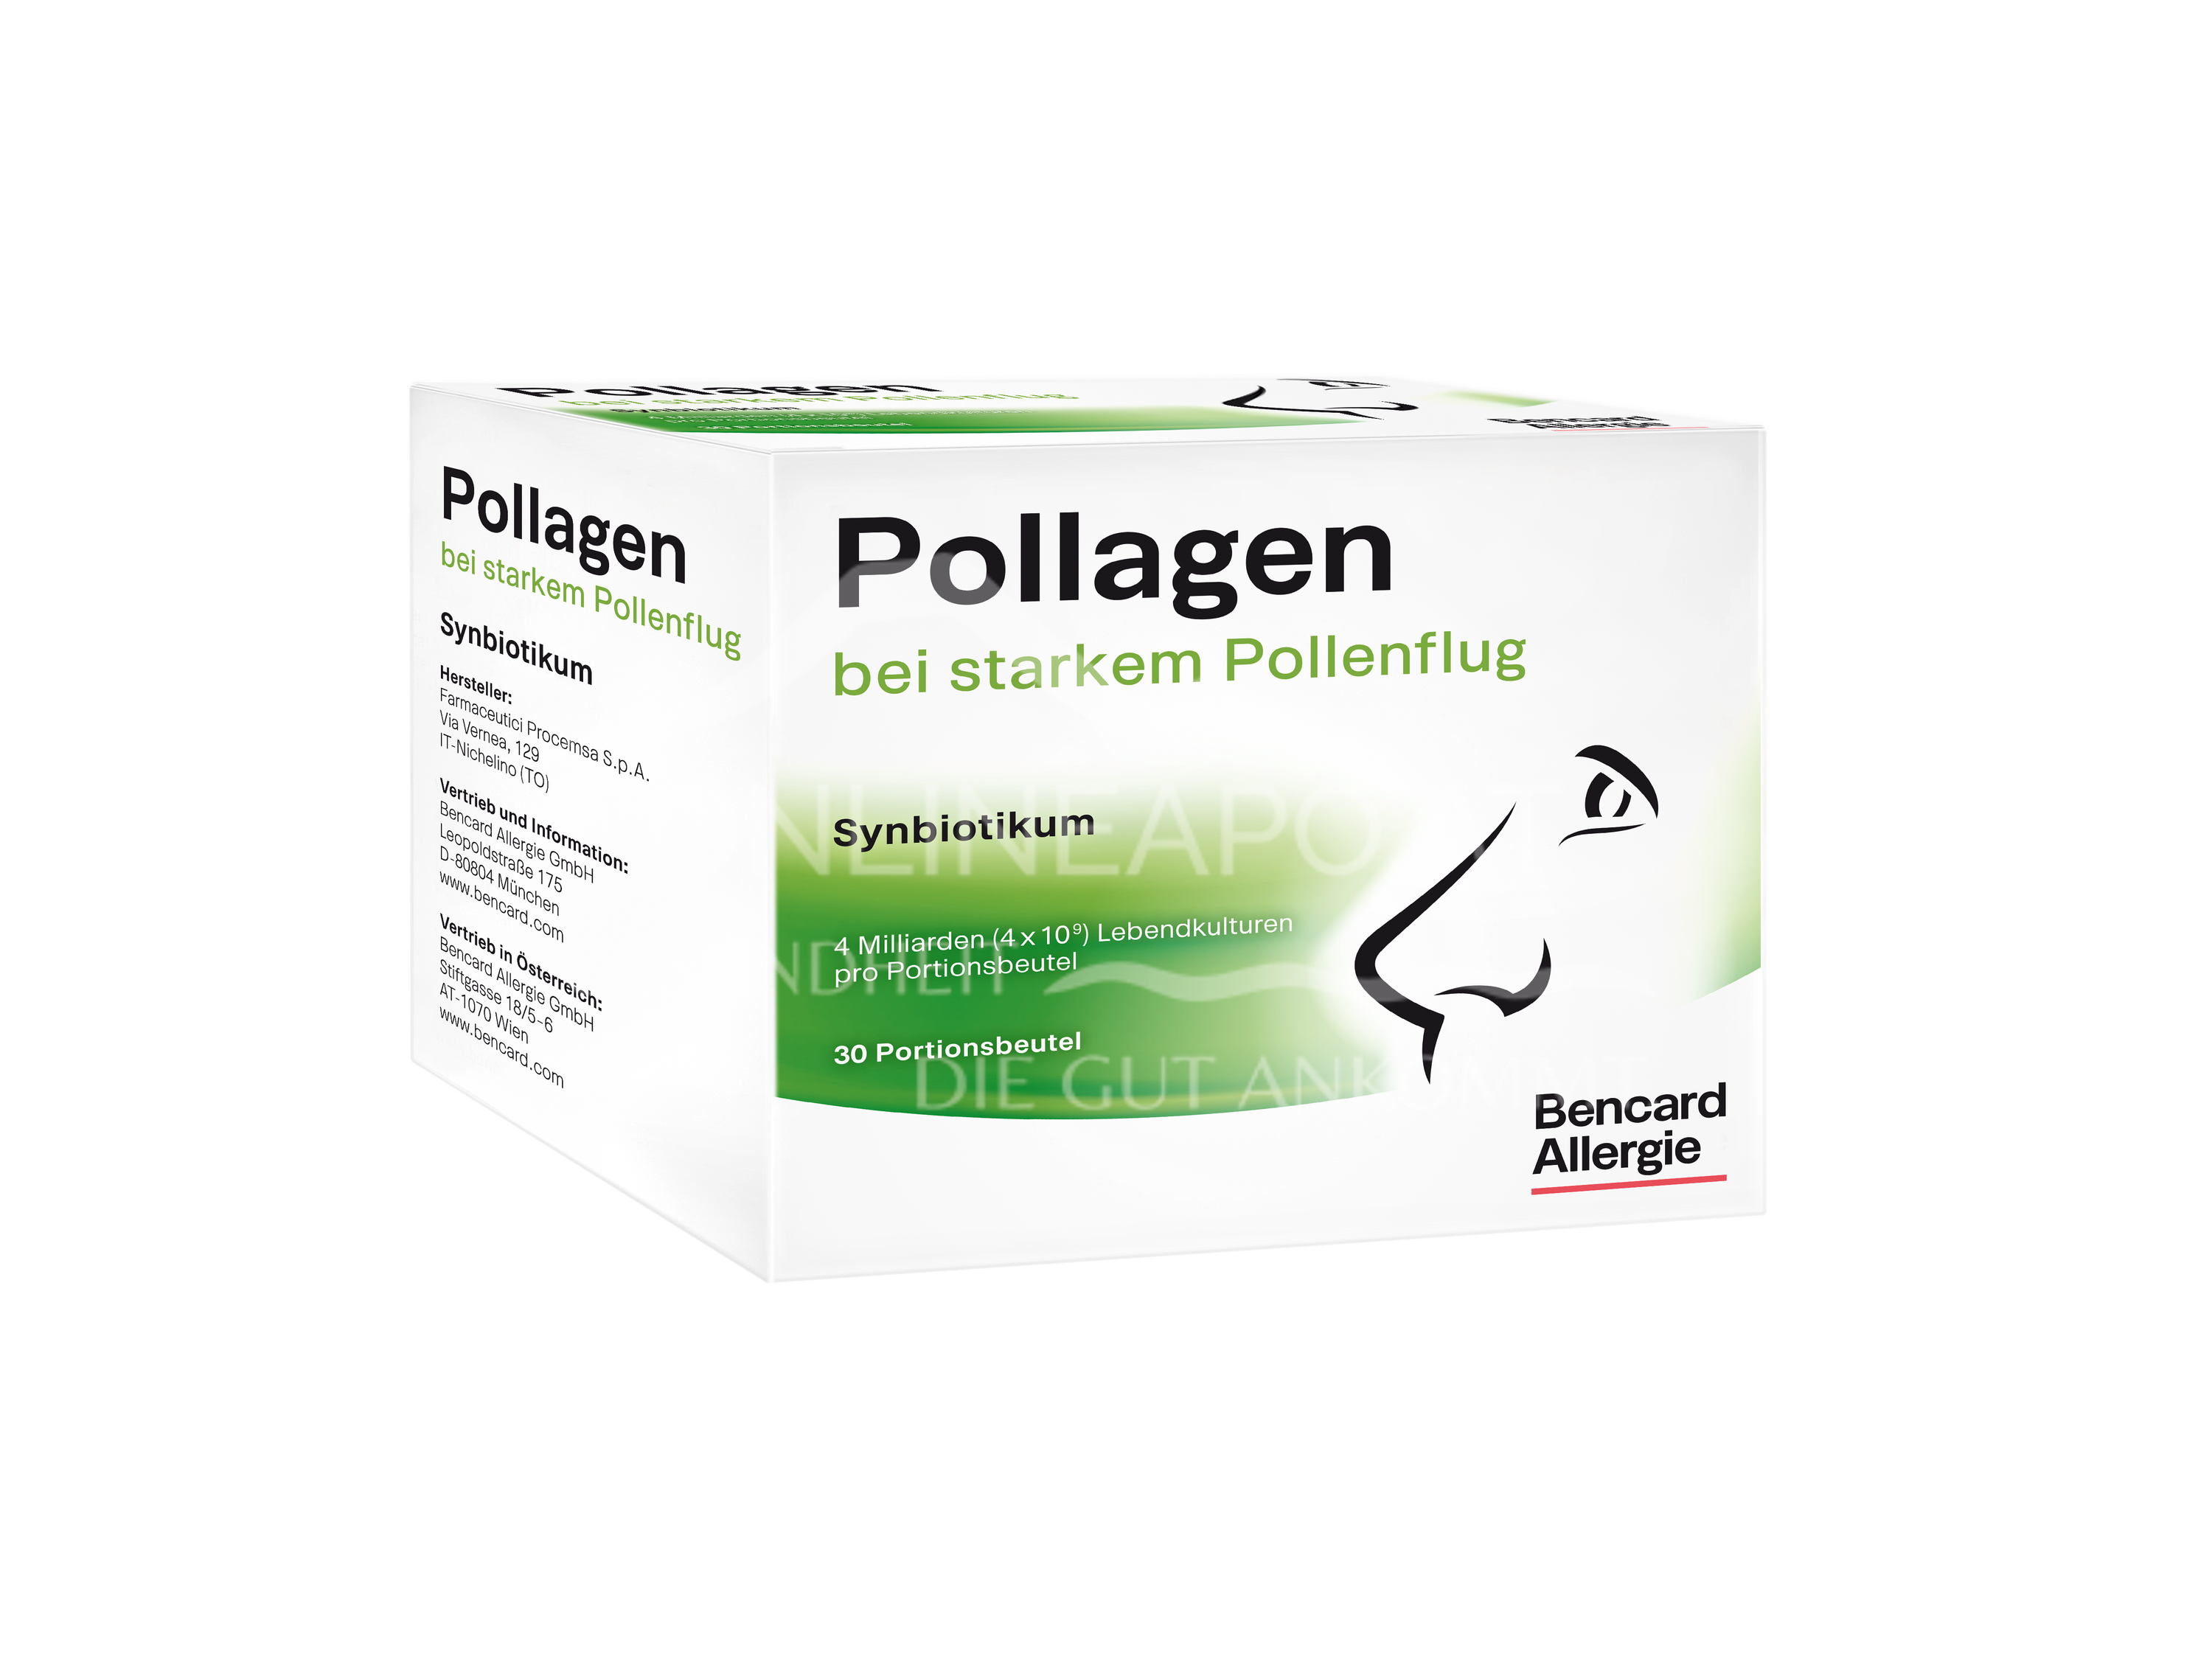 Pollagen® Portionsbeutel Bei starkem Pollenflug